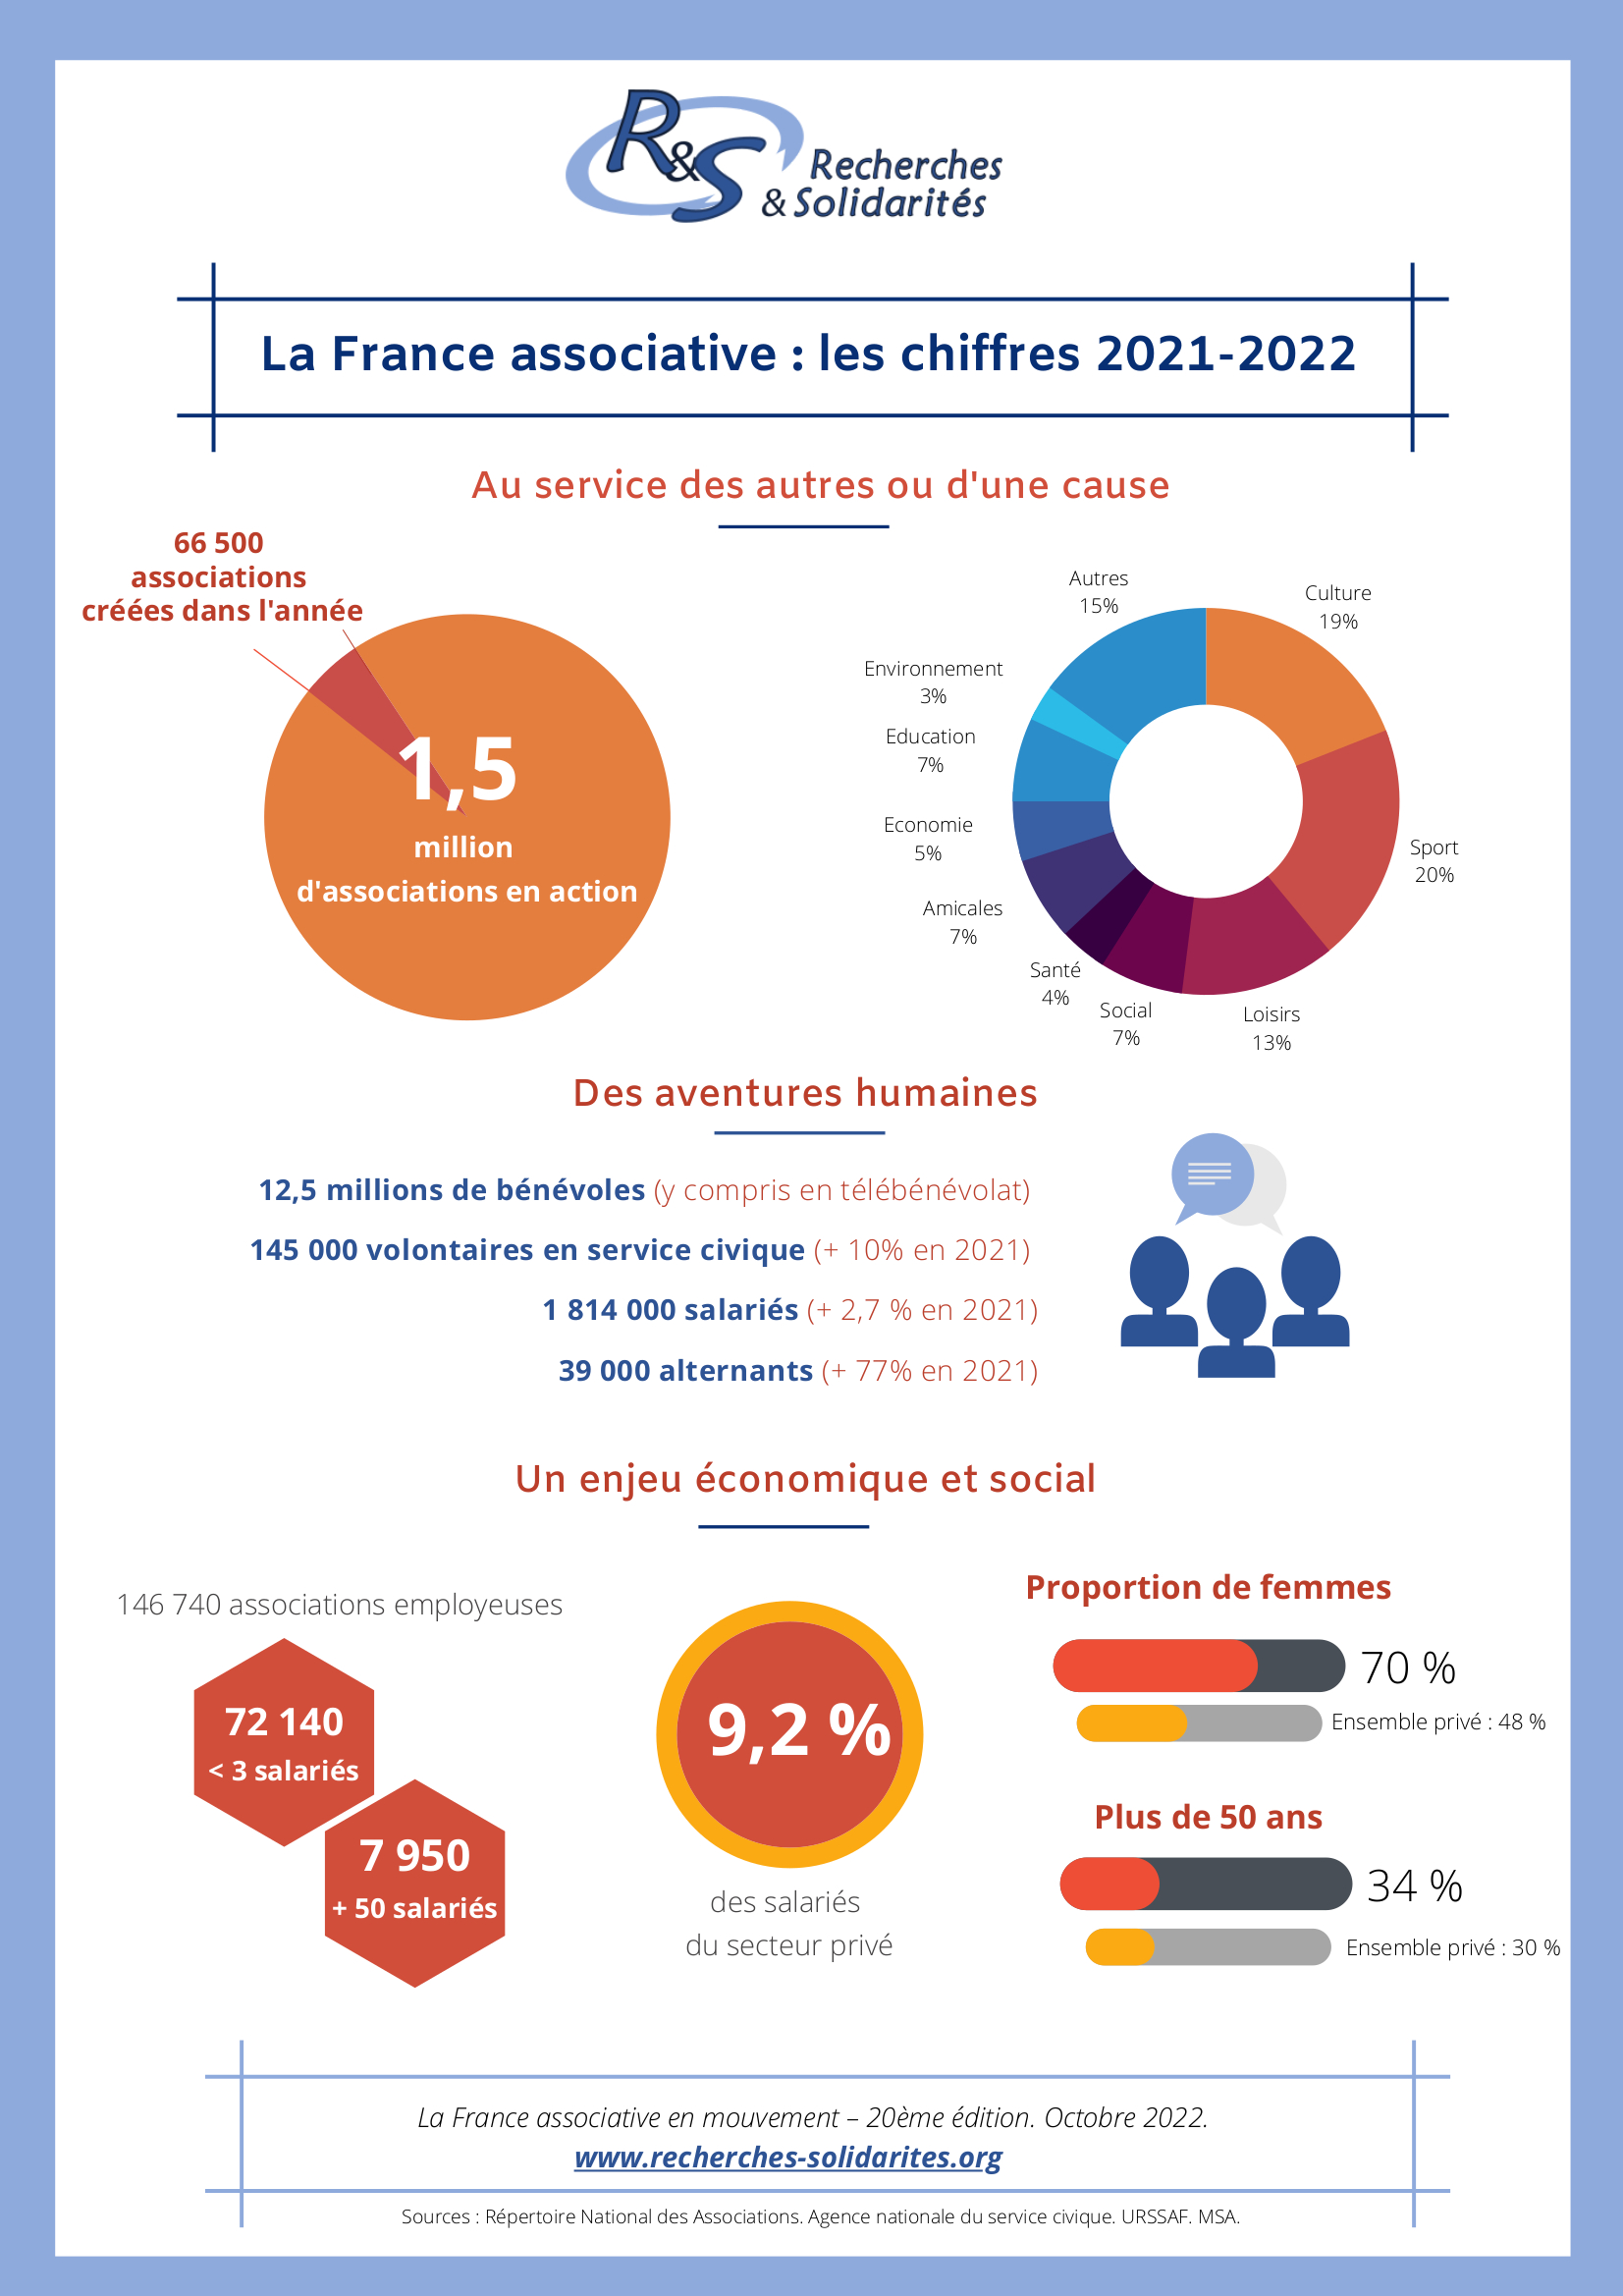 Infographie récapitulative des principaux chiffres de l'étude "La France associative en mouvement" 2022